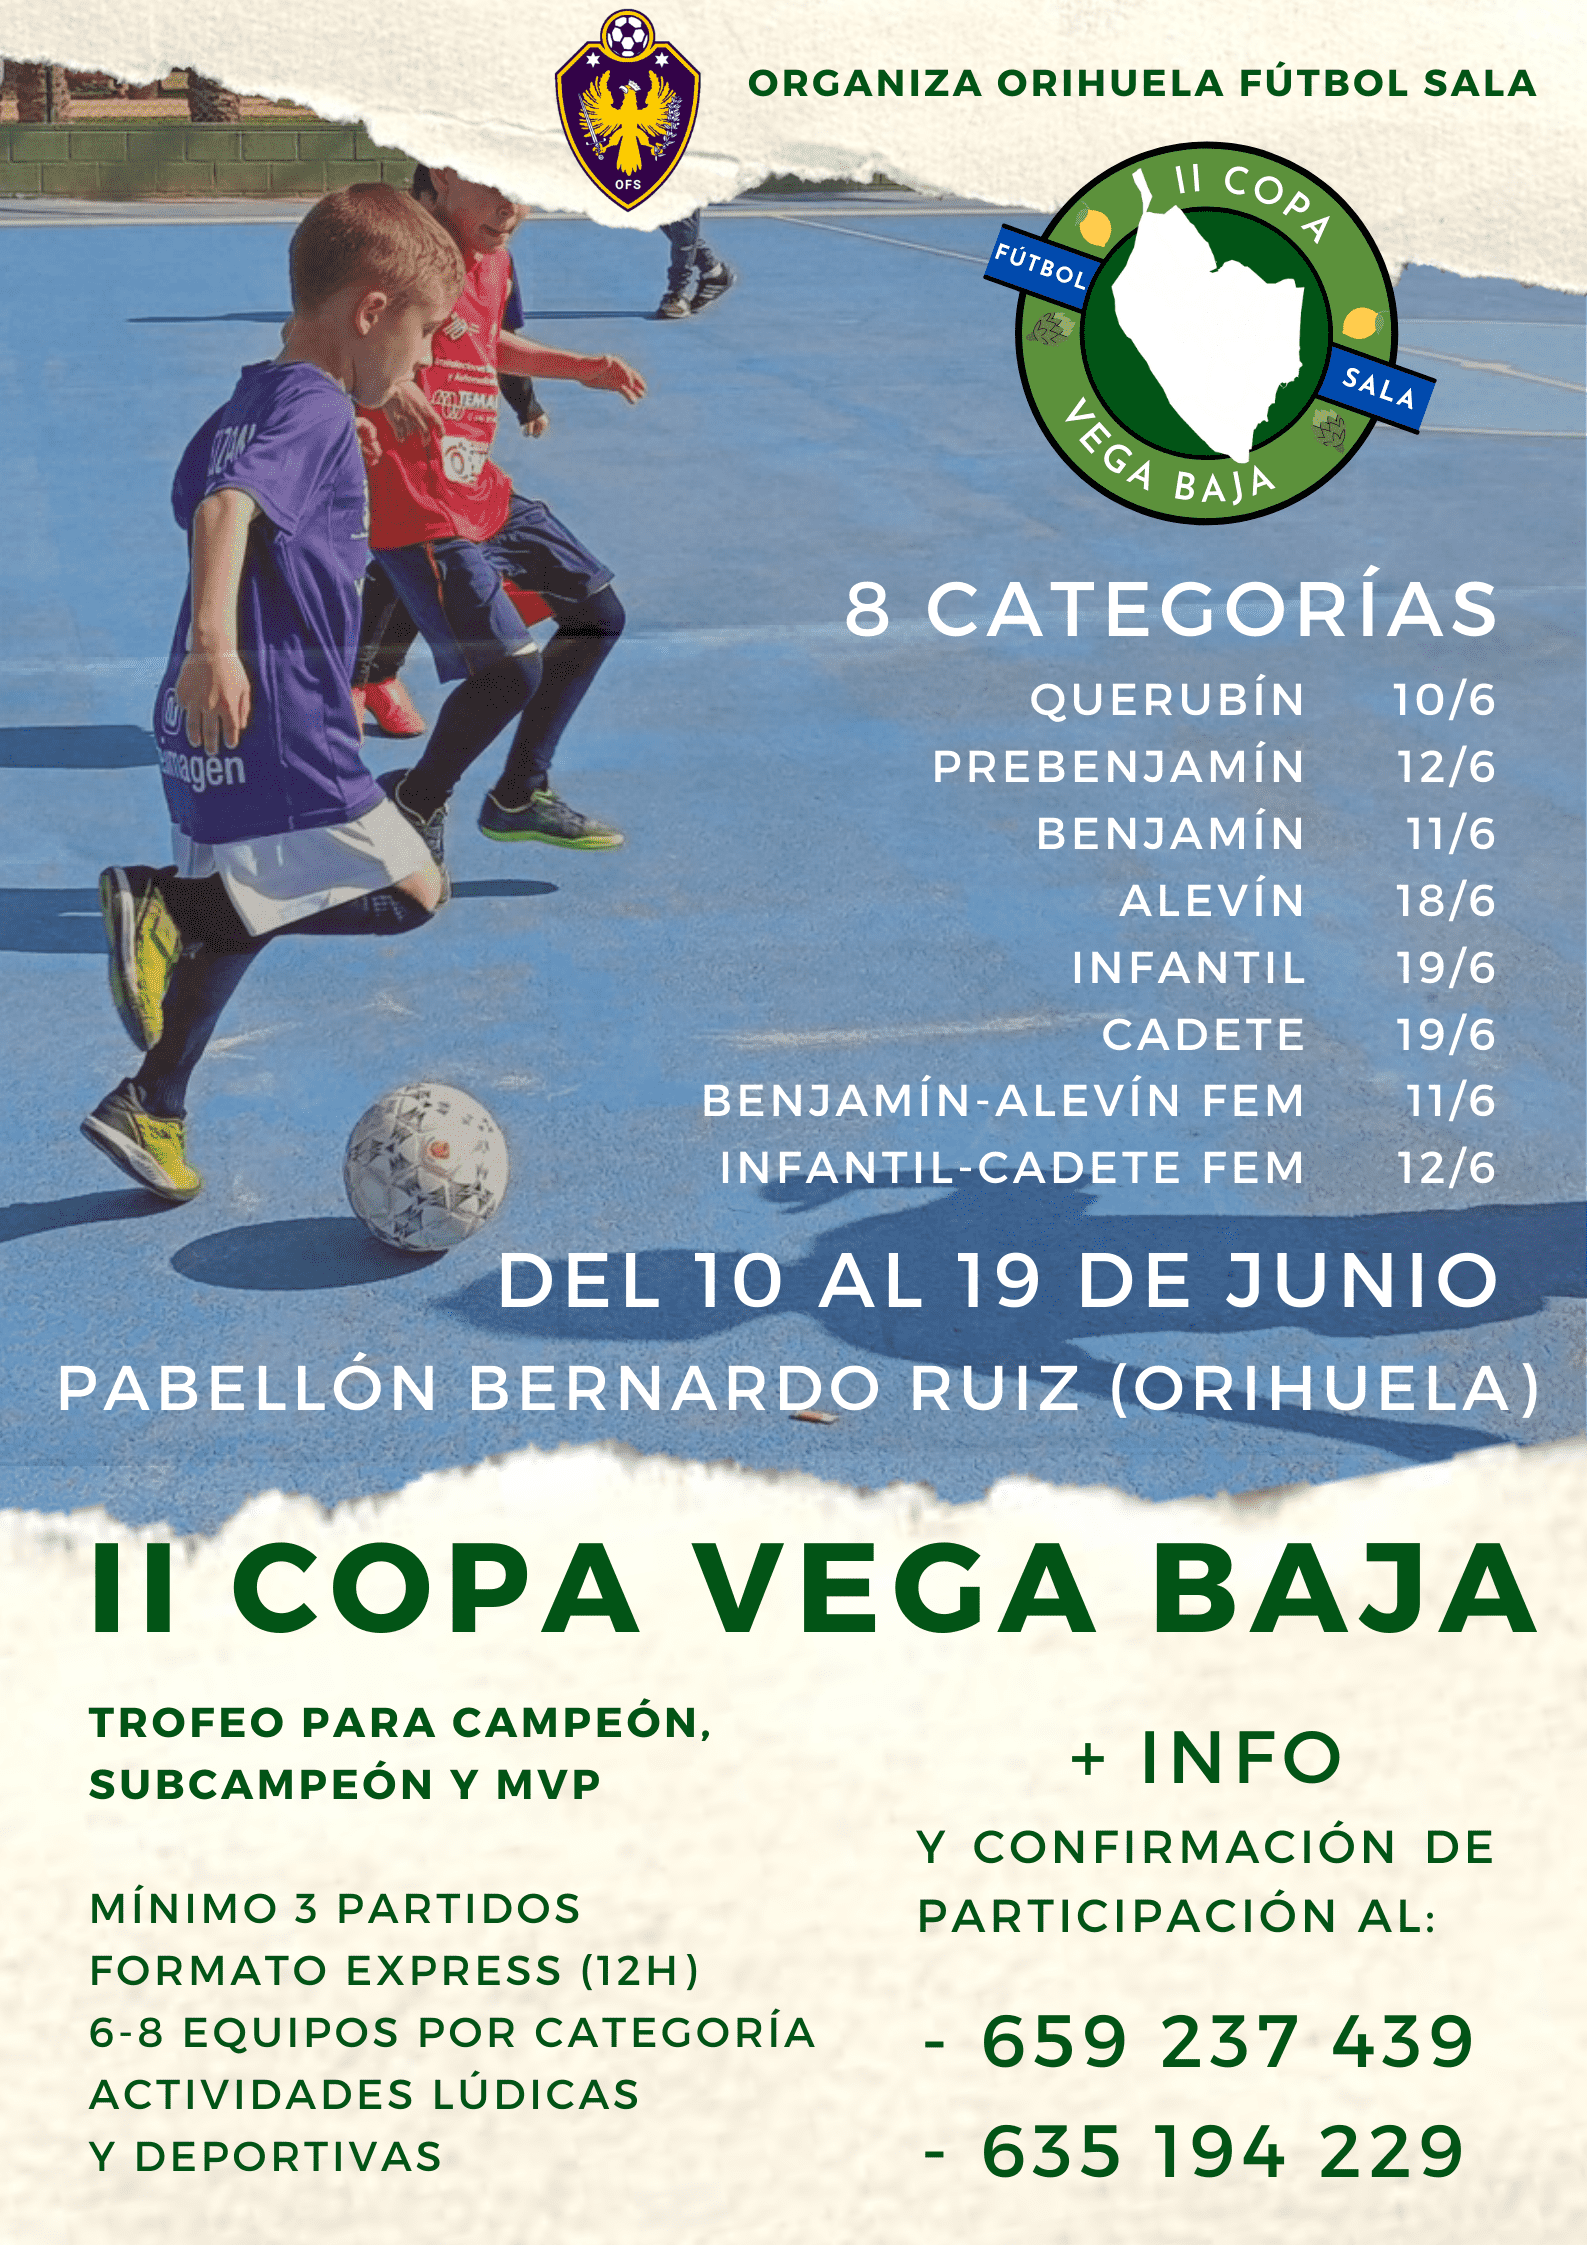 El Pabellón Bernardo Ruiz acogerá la II Copa Vega Baja de fútbol sala, en  la que participarán niñas y niños de entre 4 y 16 años